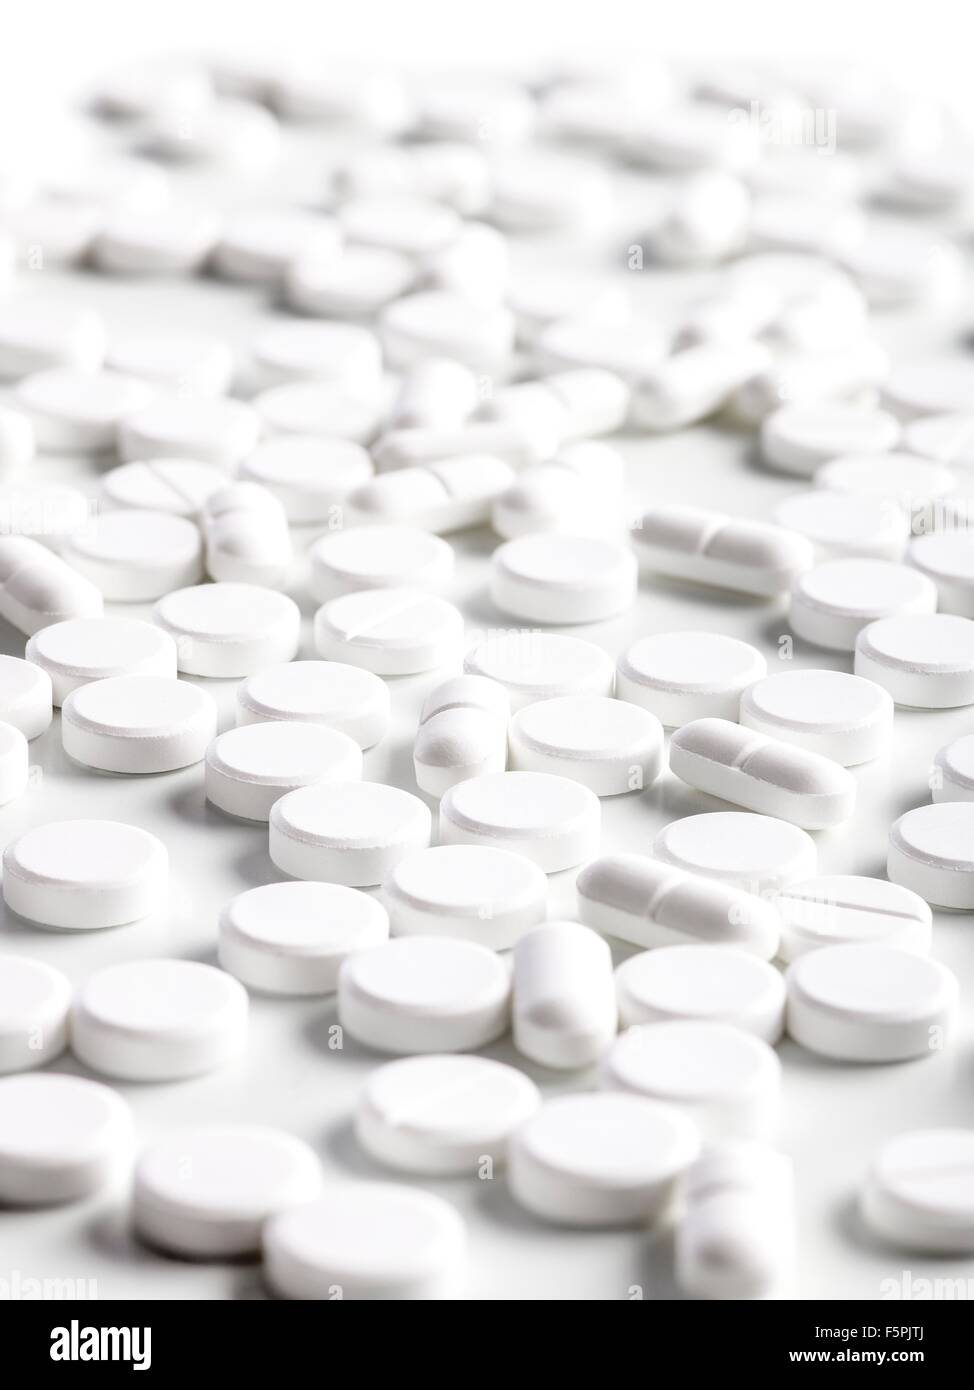 White pills, close up. Stock Photo